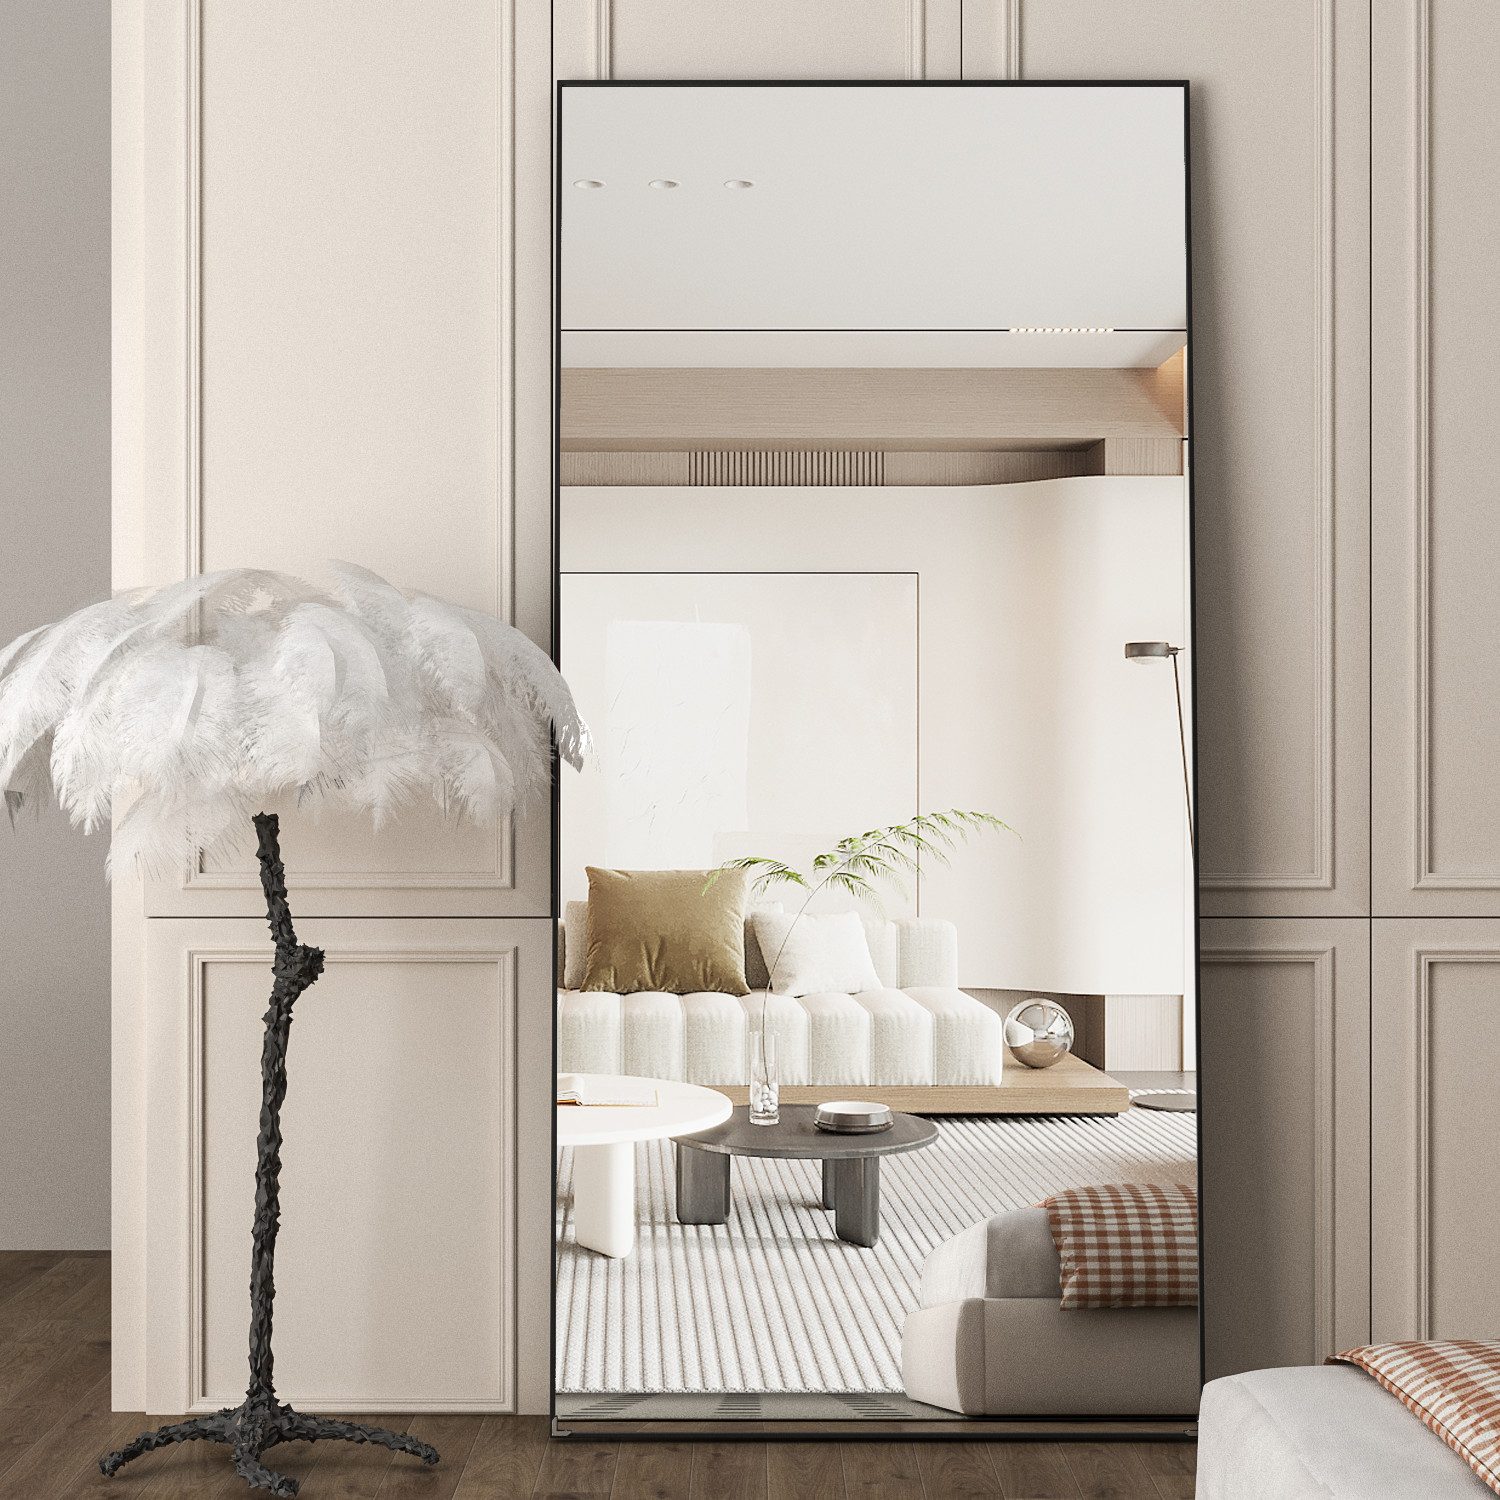 CASSILANDO Ganzkörperspiegel Standspiegel, Boden großer Spiegel, stehender Spiegel, 165x60cm, Verkleidung und an der Wand befestigter dünner Rahmen Spiegel